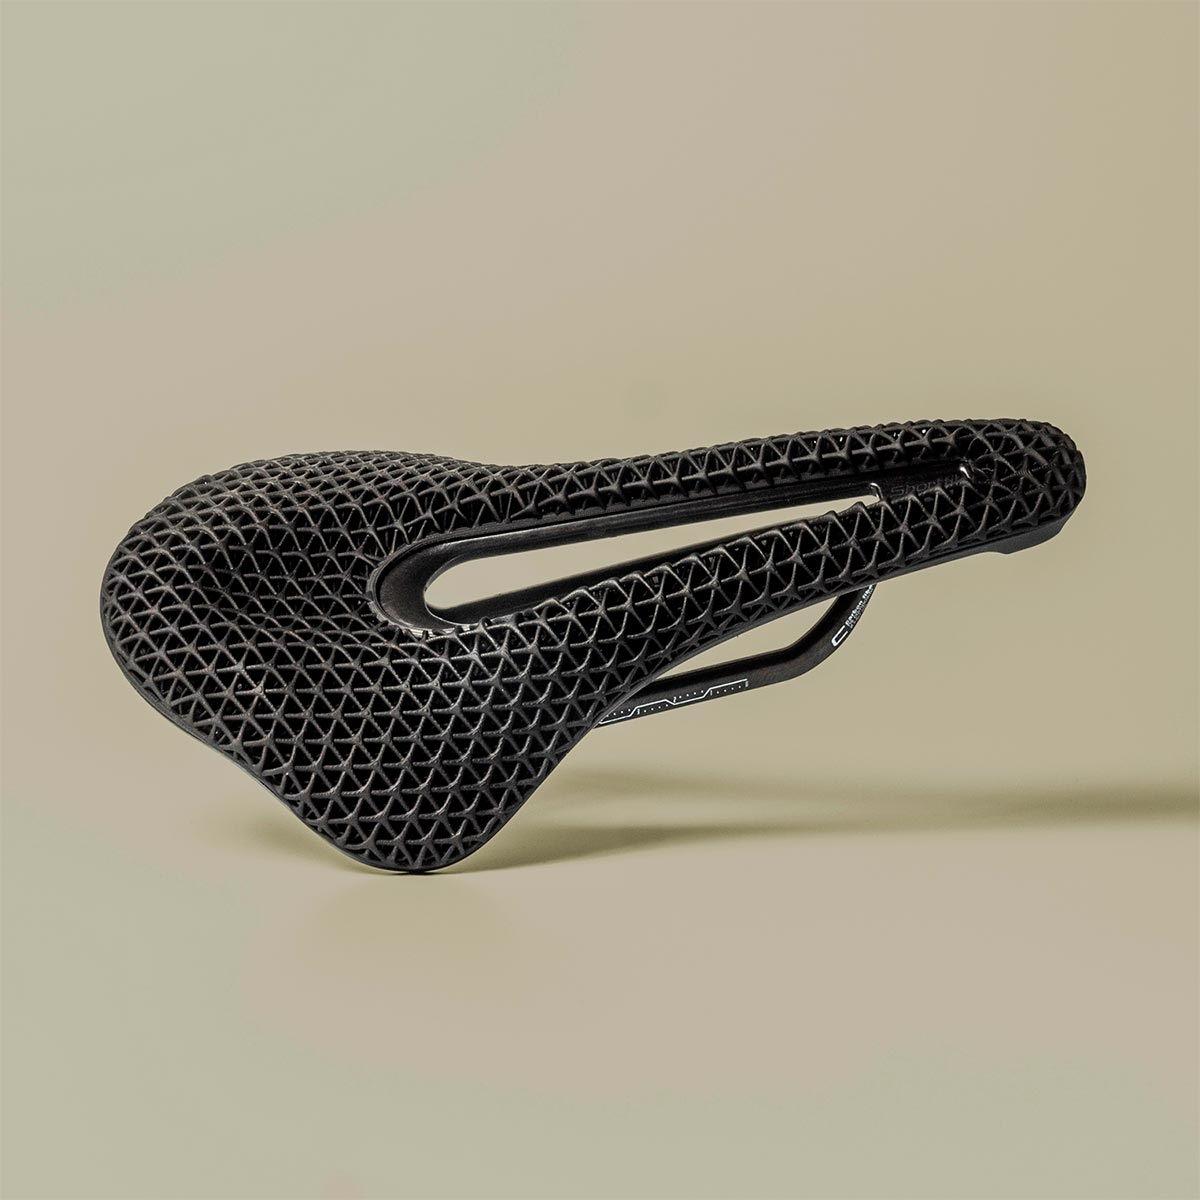 Selle San Marco Shortfit 2.0 3D, otro sillín con cubierta Carbon DLS impresa en 3D